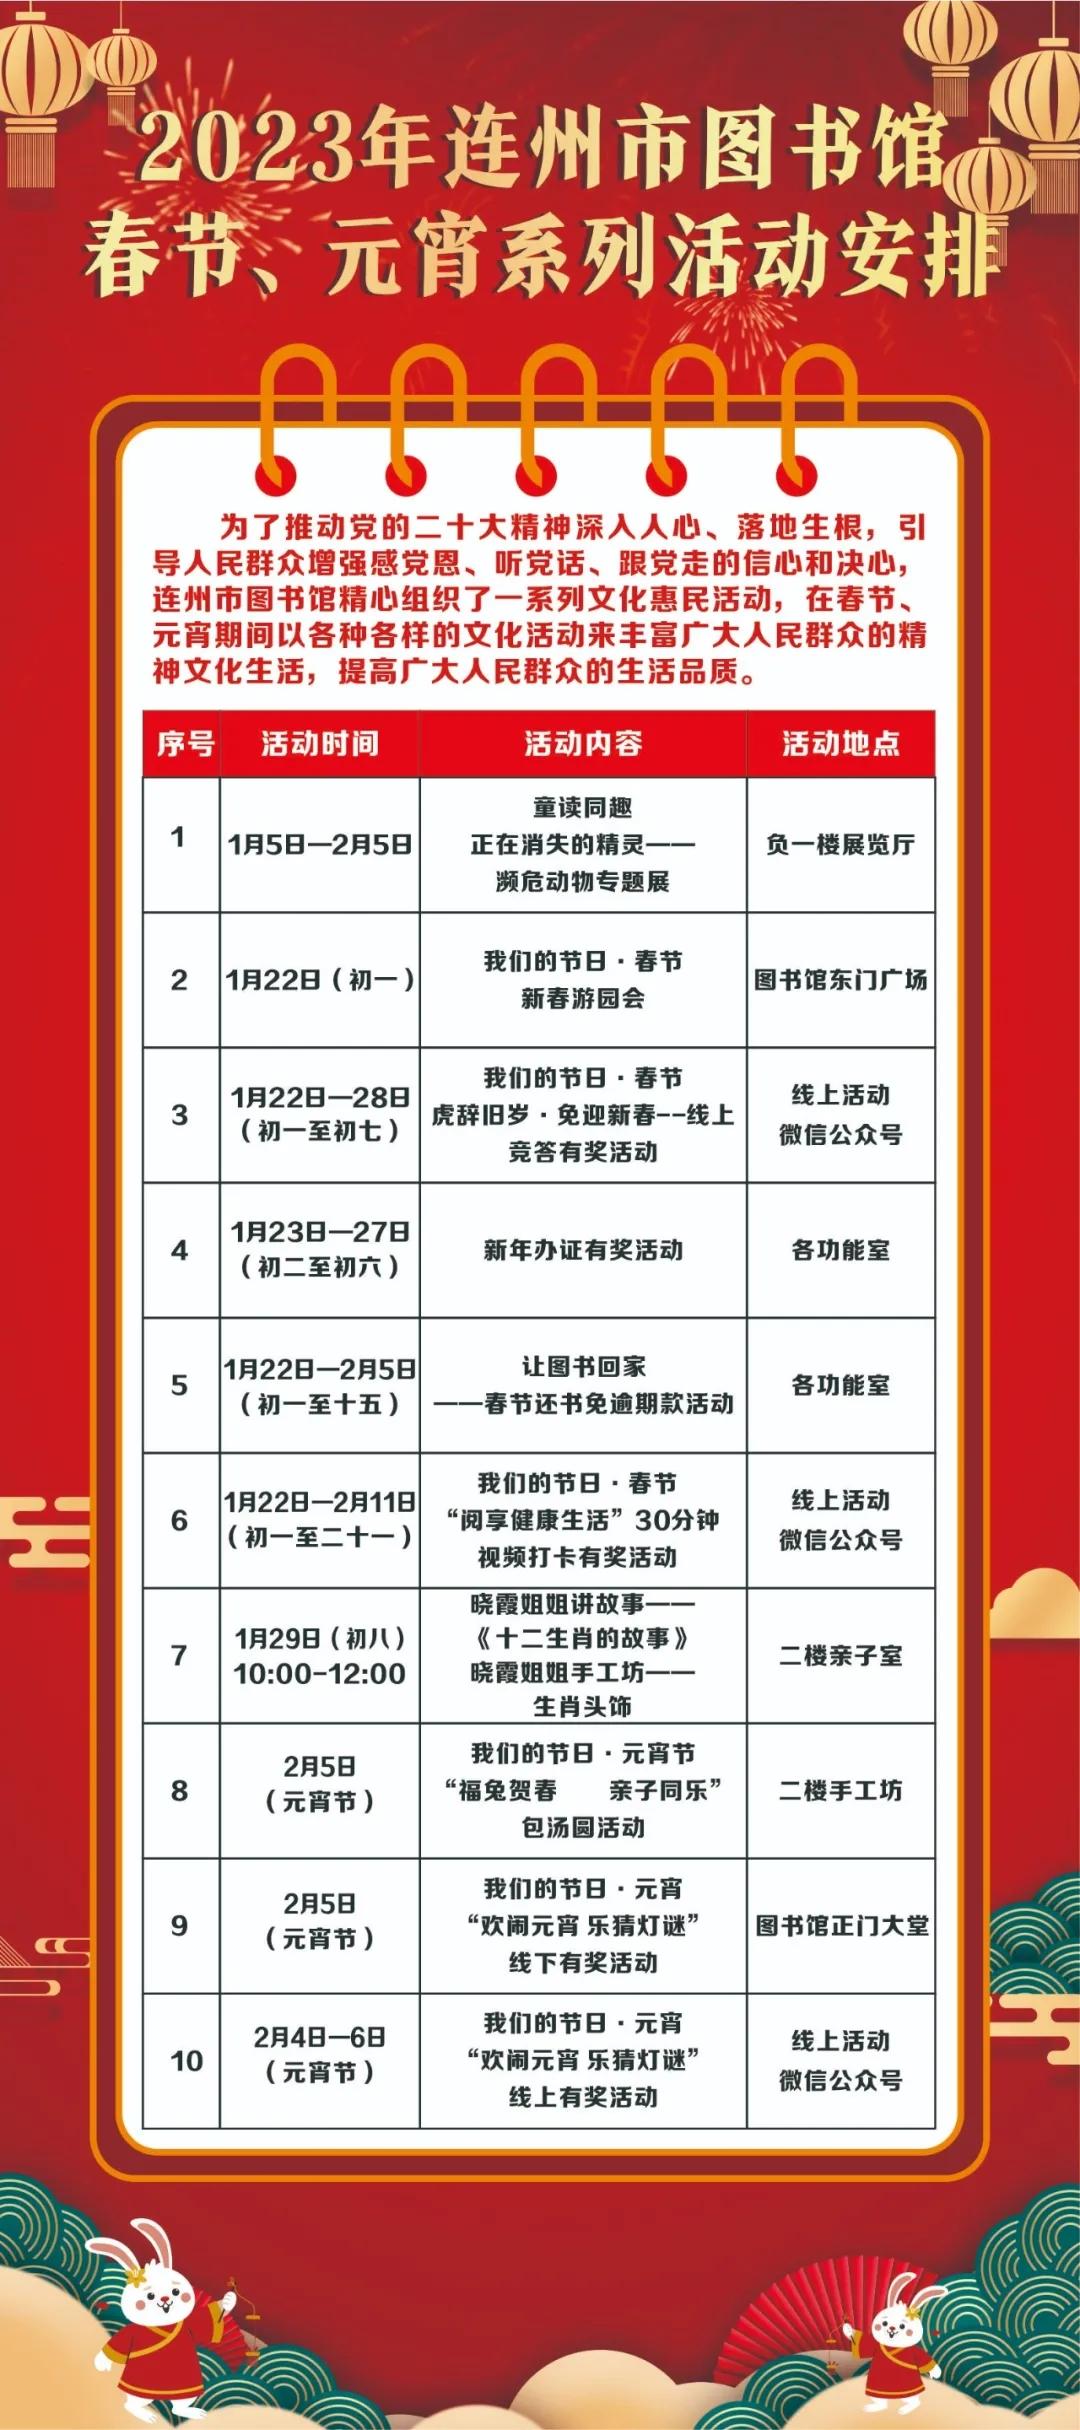 2023年连州市图书馆春节、元宵系列活动安排.jpg